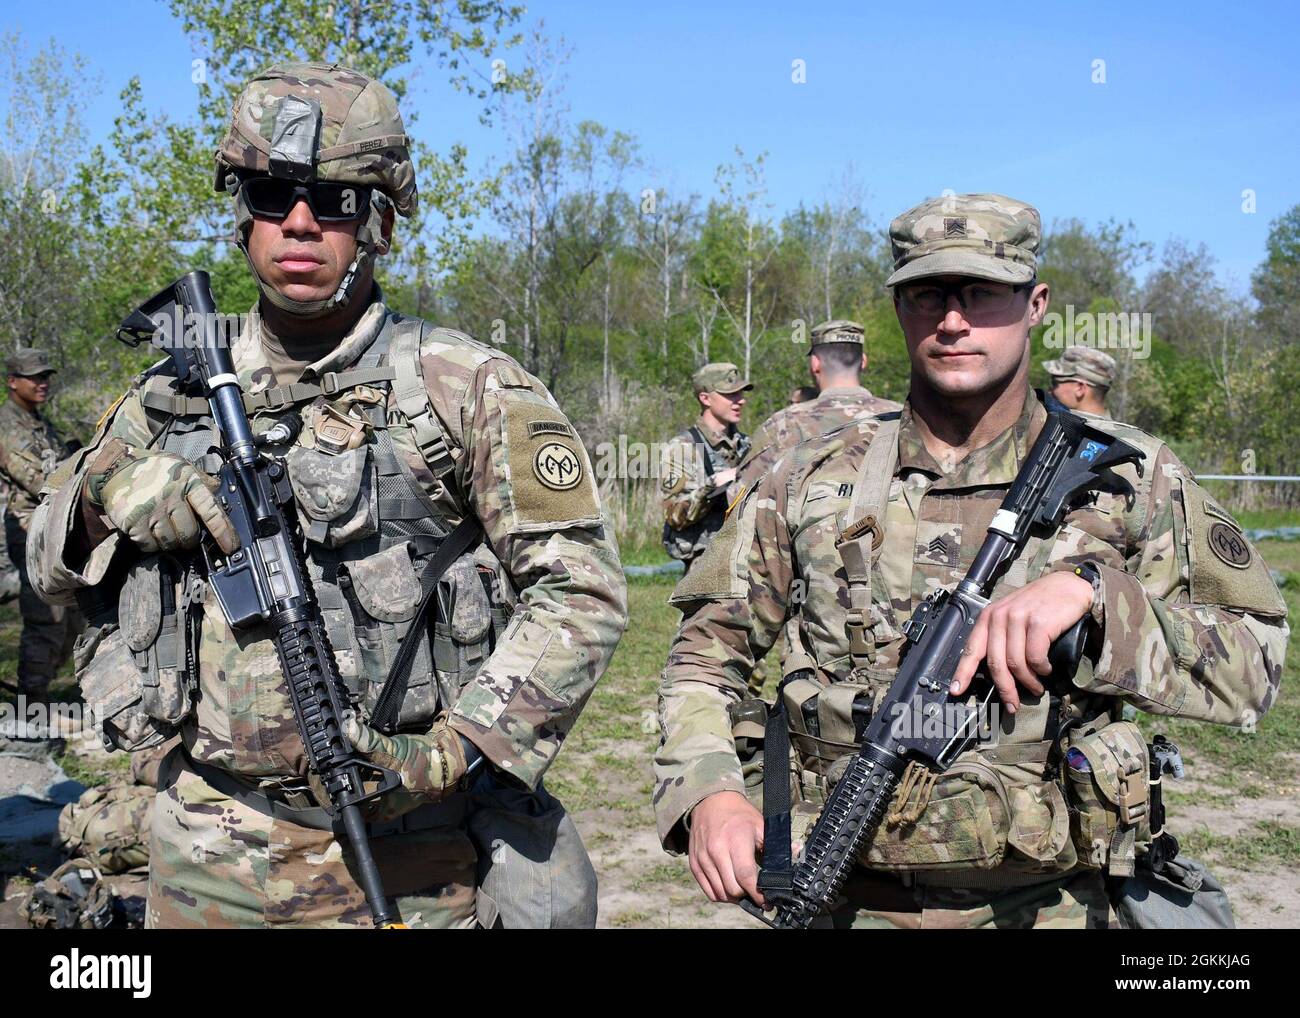 FORT DRUM, N.Y. – U.S. Army Sgt. Troy Perez, links, und Sgt. Joseph Ryan, beide Infanteristen des 1. Bataillons der New Yorker Nationalgarde, des 69. Infanterie-Regiments, bereiten sich auf die Durchführung des Landnavigationsteils der 10. Mountain Division Expert Infantryman Badge Assessment in Fort Drum, N.Y., 18. Mai 2021 vor. Zehn Infanteriesoldaten und ein Sanitäter aus dem Kampfteam der 27. Infanteriebrigade nahmen an der fünftägigen Prüfung Teil, um die begehrten Abzeichen „Expert Infantryman“ und „Expert Field Medical“ zu erhalten. Stockfoto